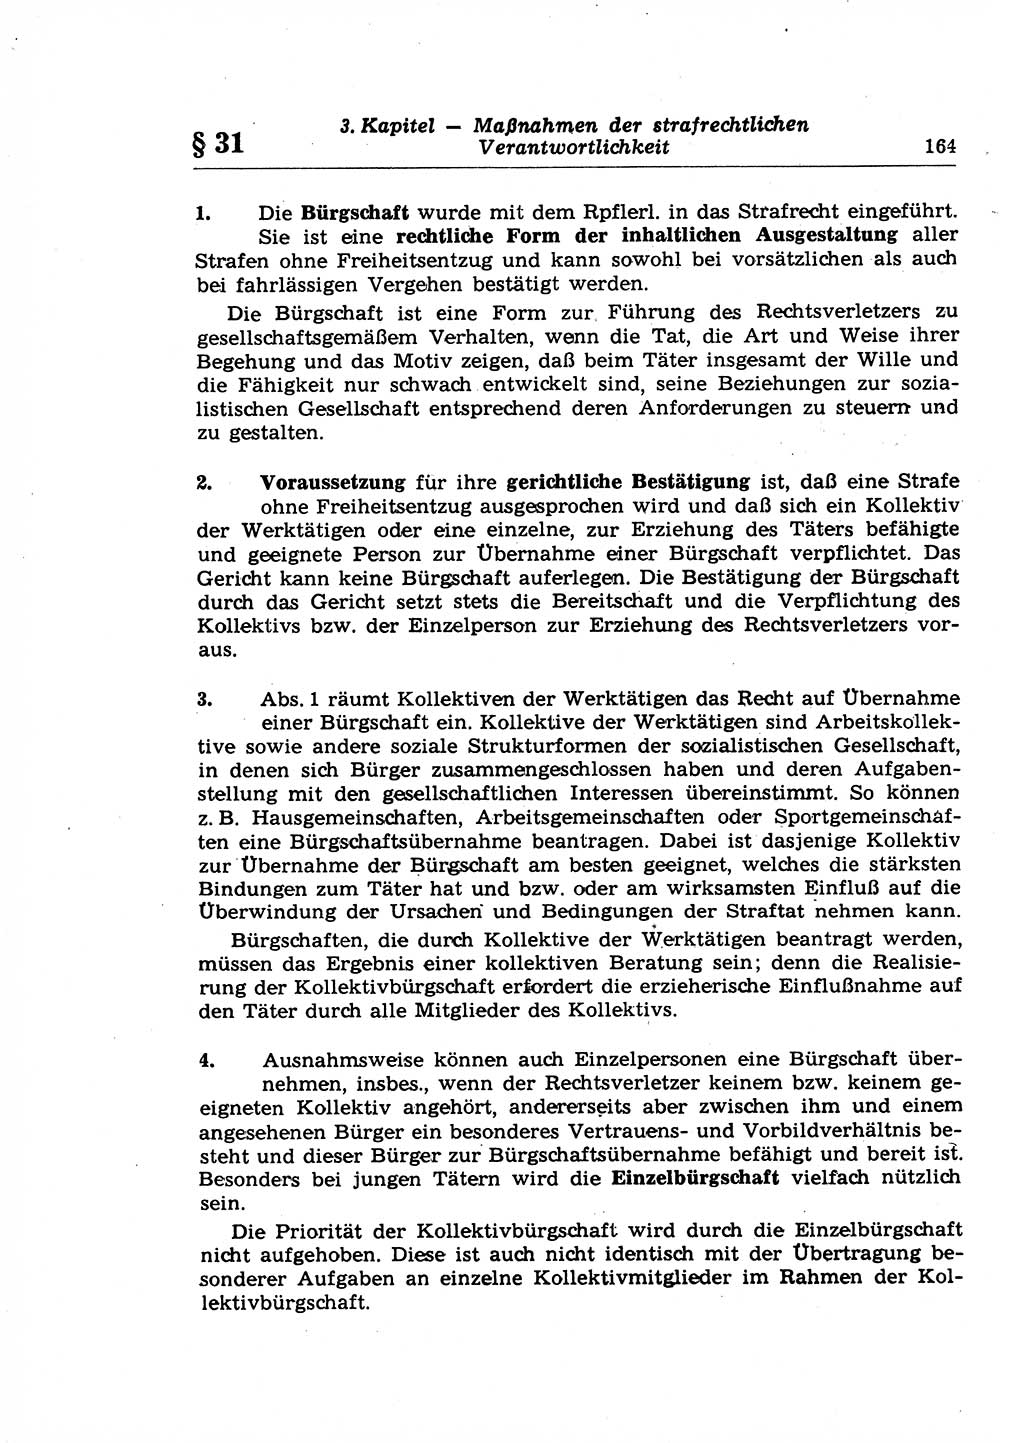 Strafrecht der Deutschen Demokratischen Republik (DDR), Lehrkommentar zum Strafgesetzbuch (StGB), Allgemeiner Teil 1969, Seite 164 (Strafr. DDR Lehrkomm. StGB AT 1969, S. 164)